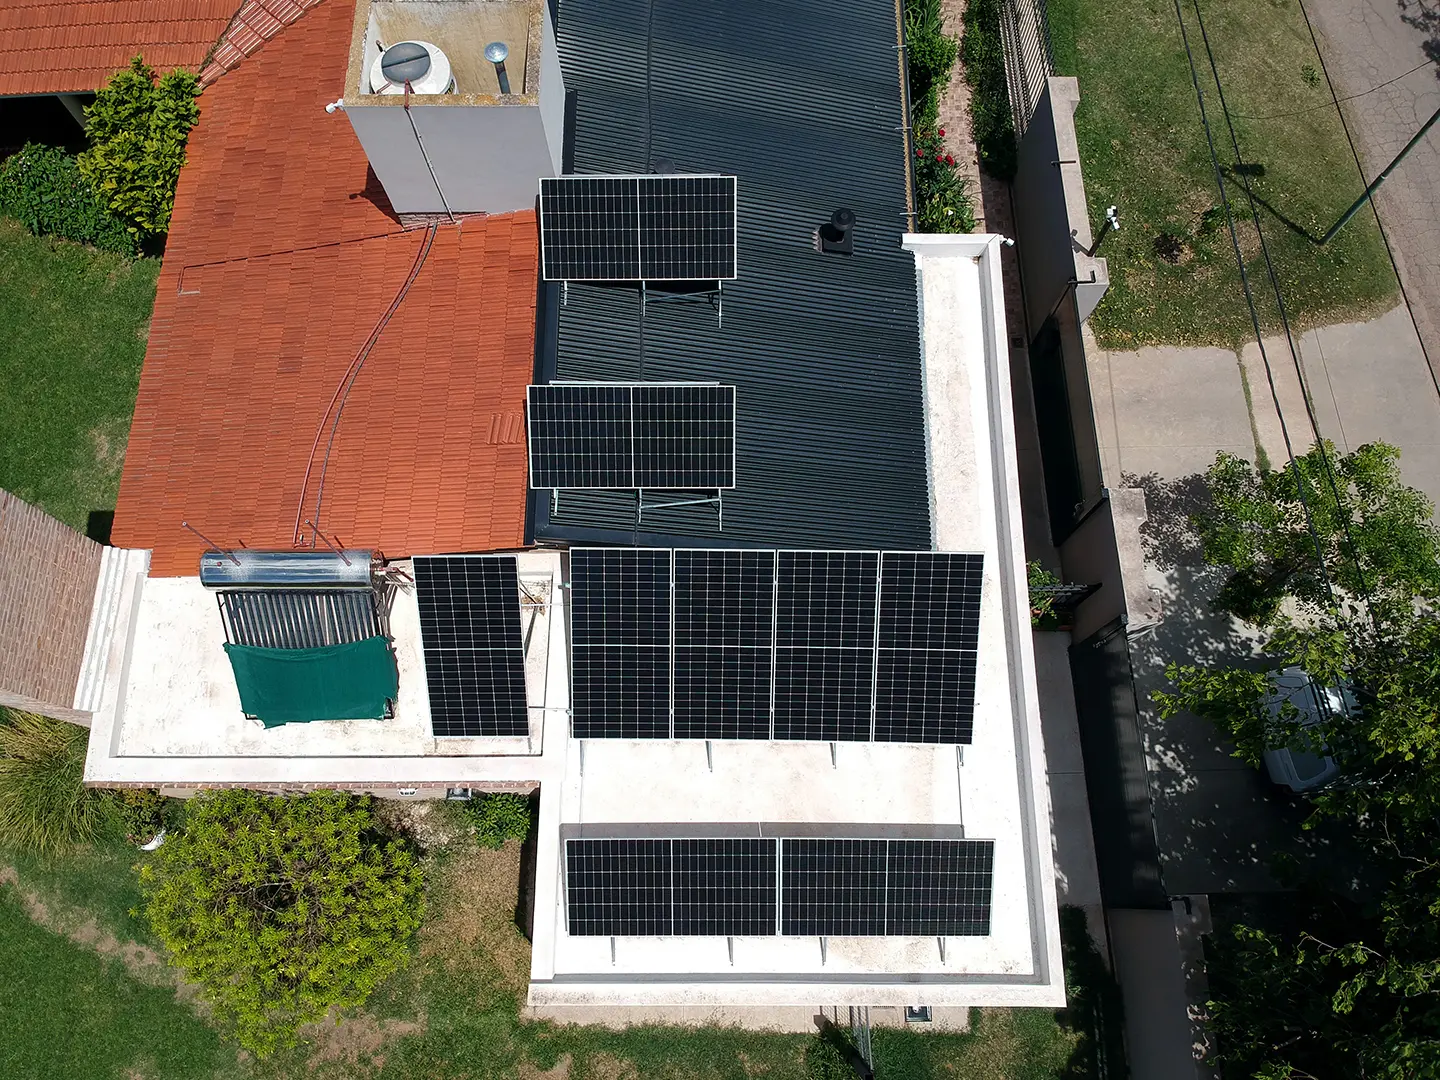 Instalación de paneles solares fotovoltaicos para generación de energía